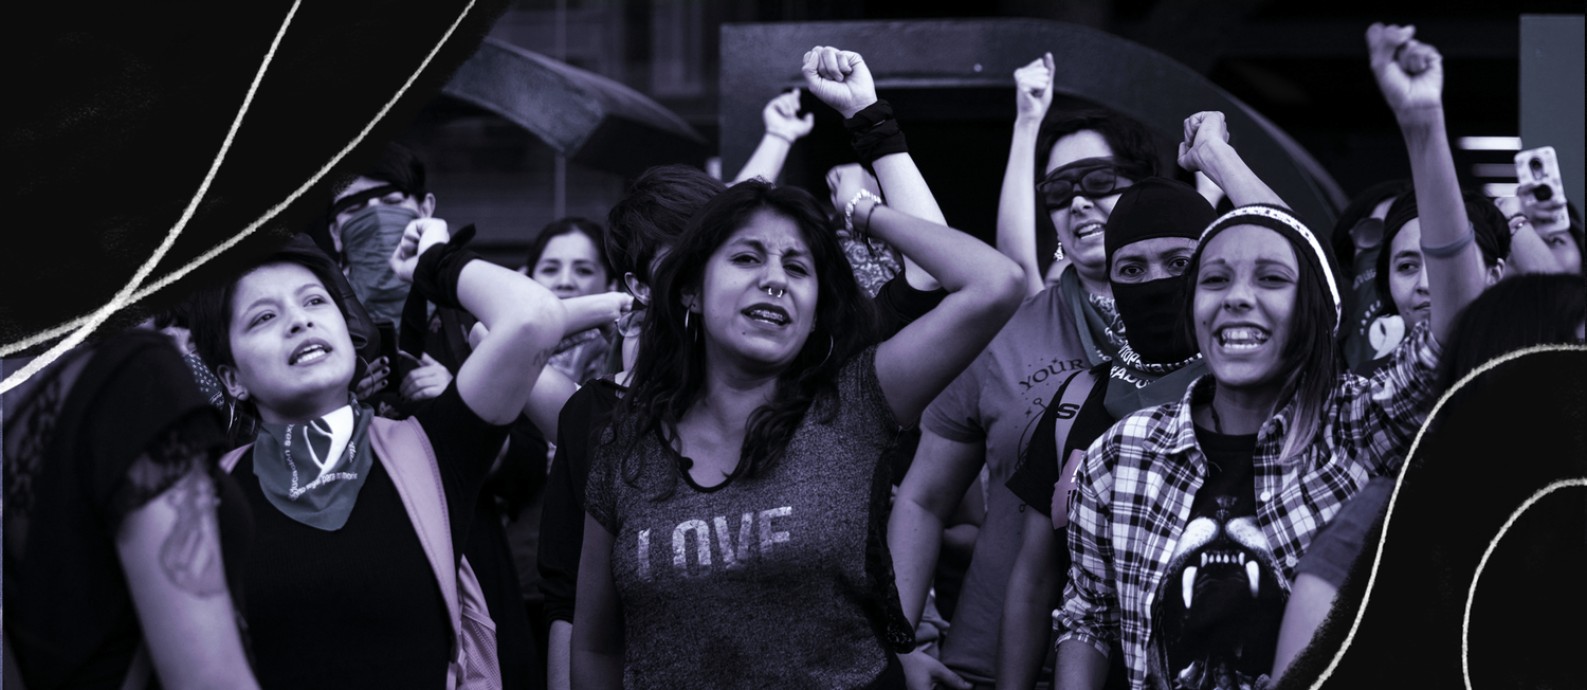 Manifestantes no bairro de Roma, na Cidade do México, reproduzem a performance "Um violador no seu caminho", que se tornou um hino internacional da nova onda de ativismo feminista Foto: Toya Sarno Jordan / The New York Times